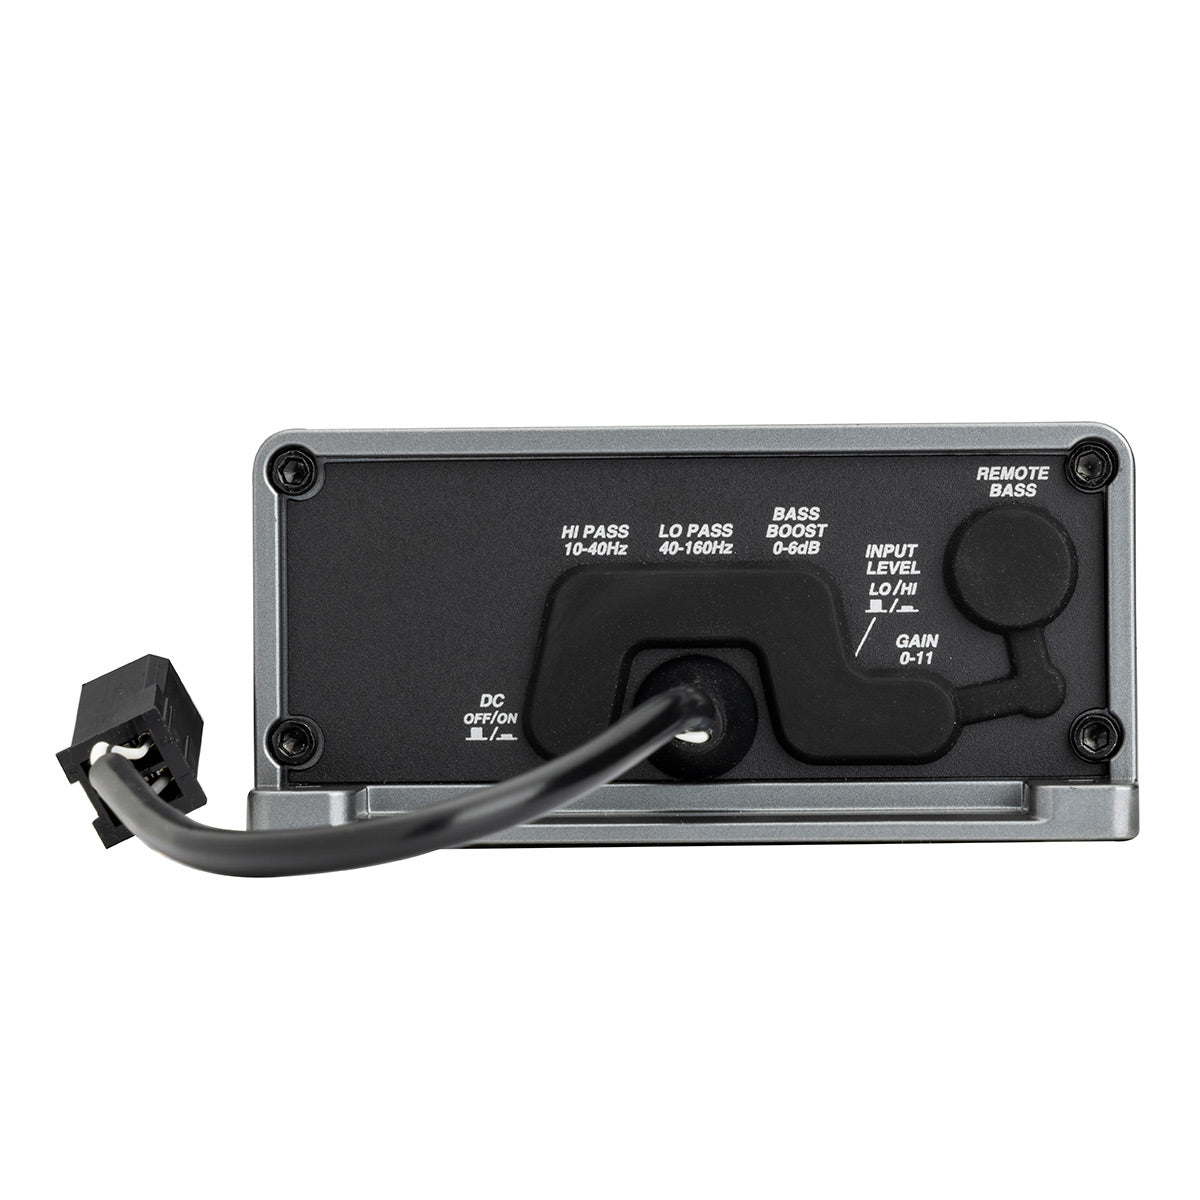 Kicker KPX5001 500-Watt Mono-Channel Compact Amplifier